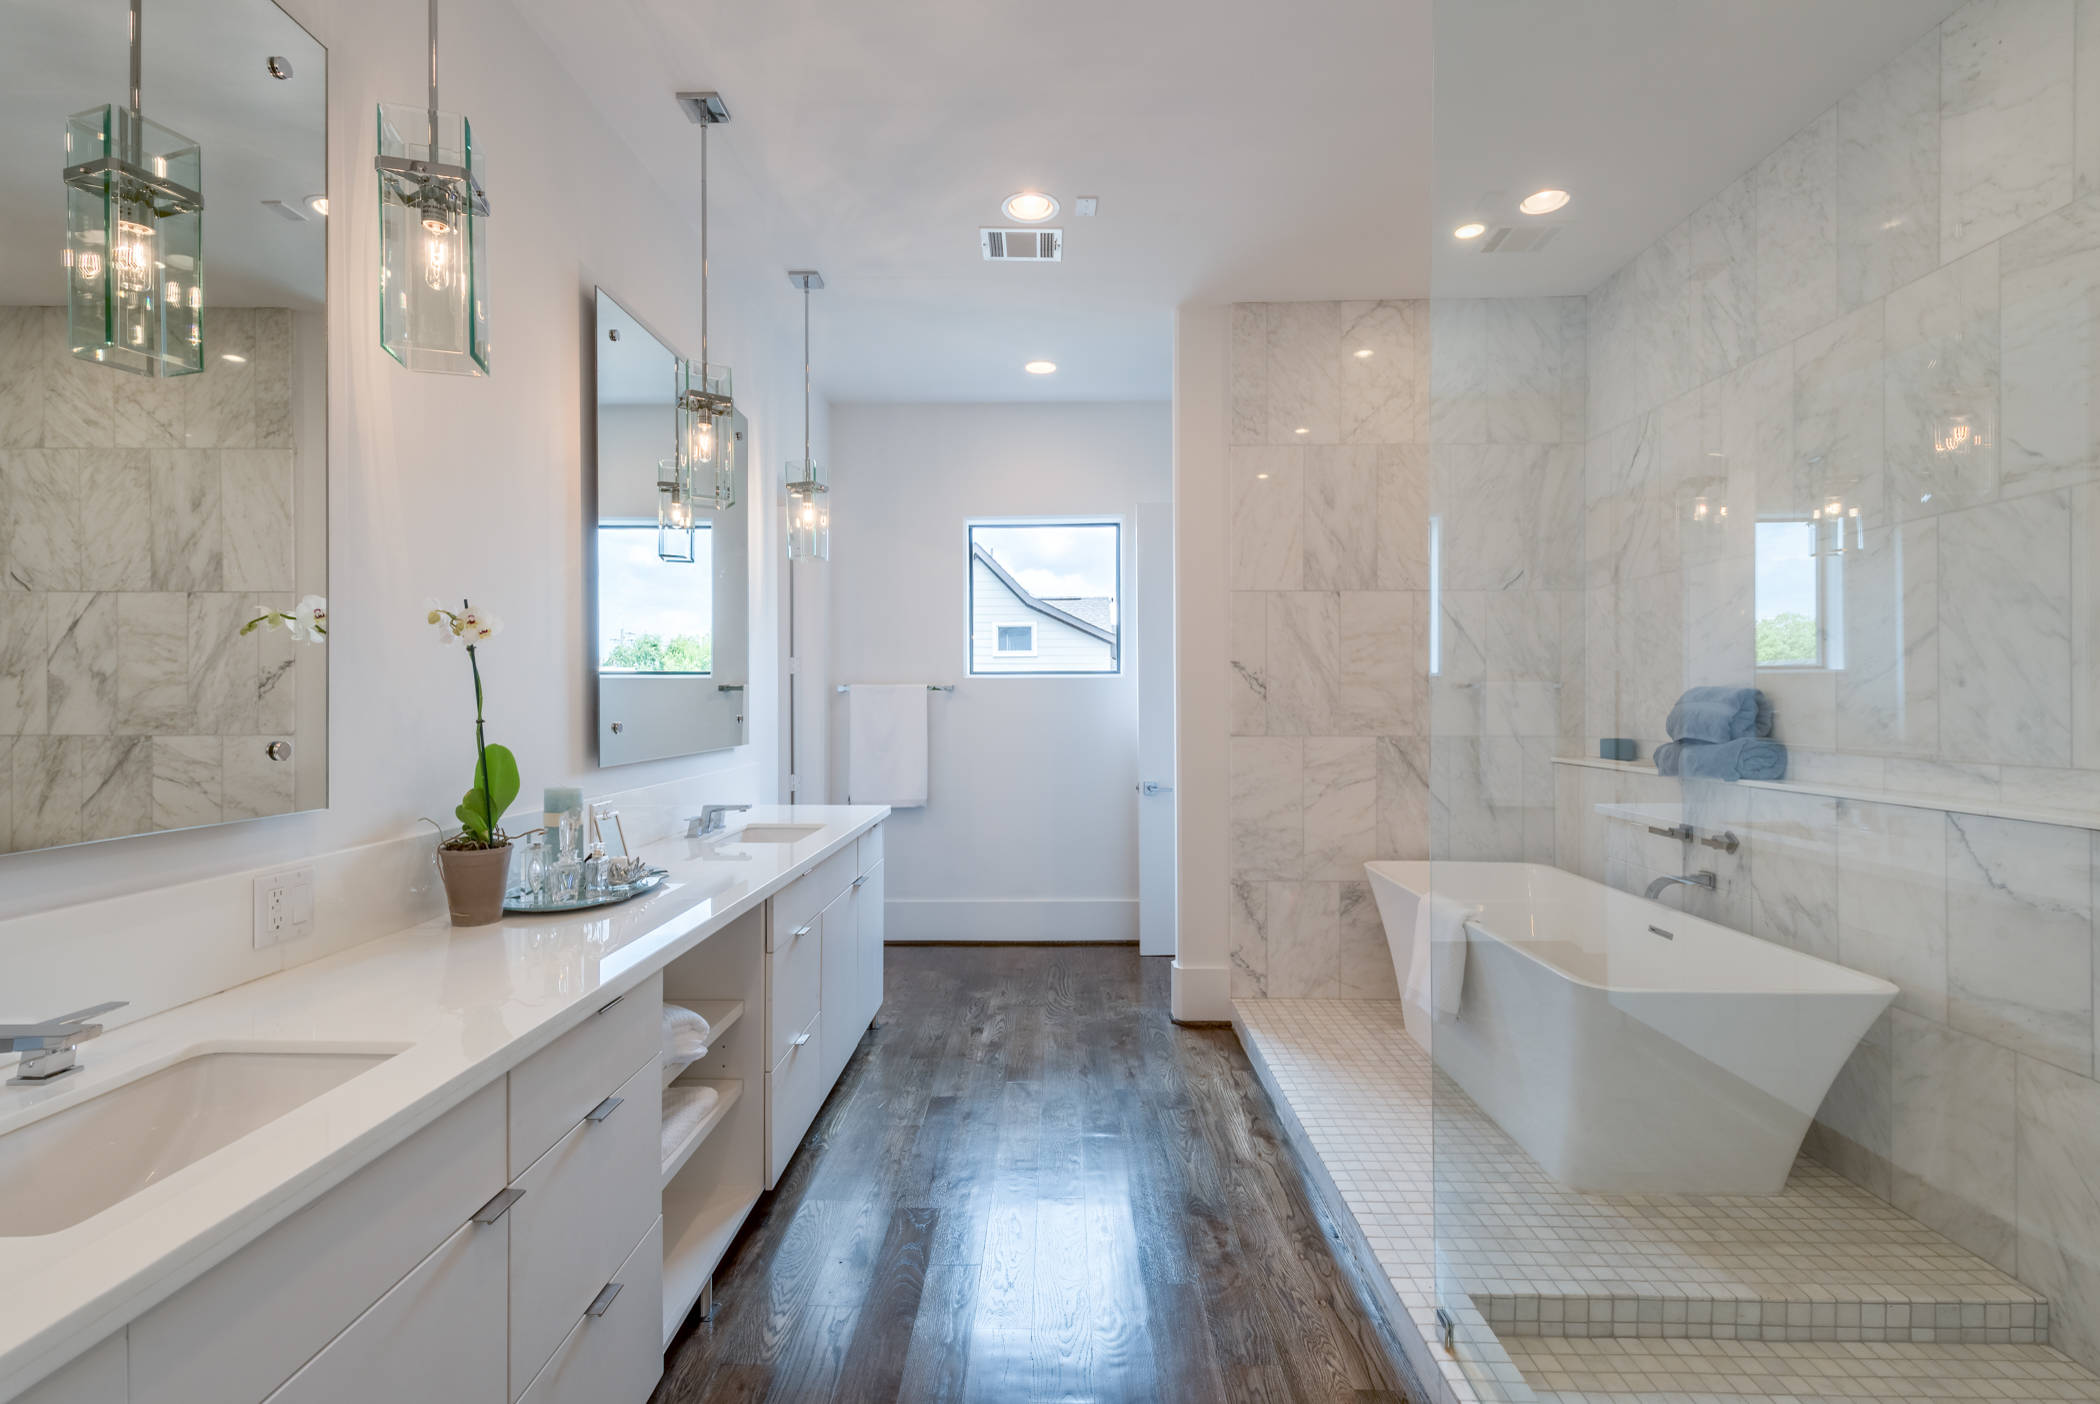 75 Marble Tile Dark Wood Floor Bathroom Ideas You'll Love - January, 2023 |  Houzz